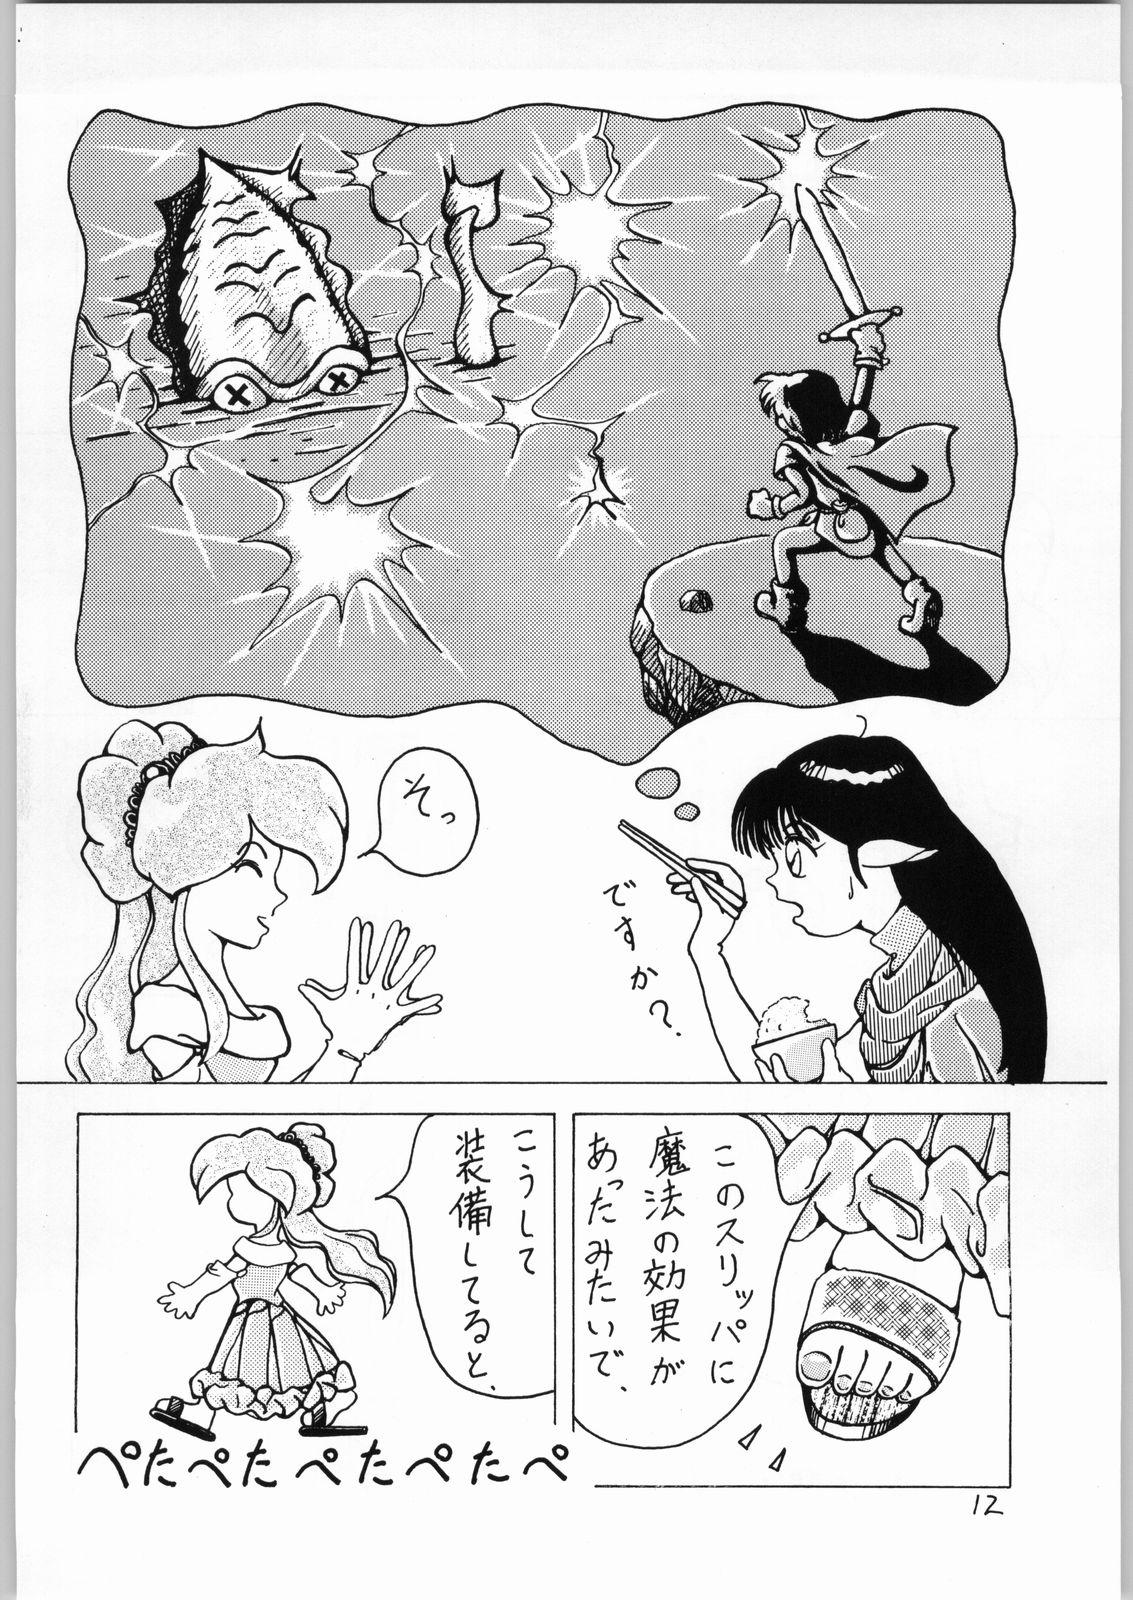 Transsexual Dance of Princess 3 - Sailor moon Tenchi muyo Akazukin cha cha Minky momo Ng knight lamune and 40 Camera - Page 11